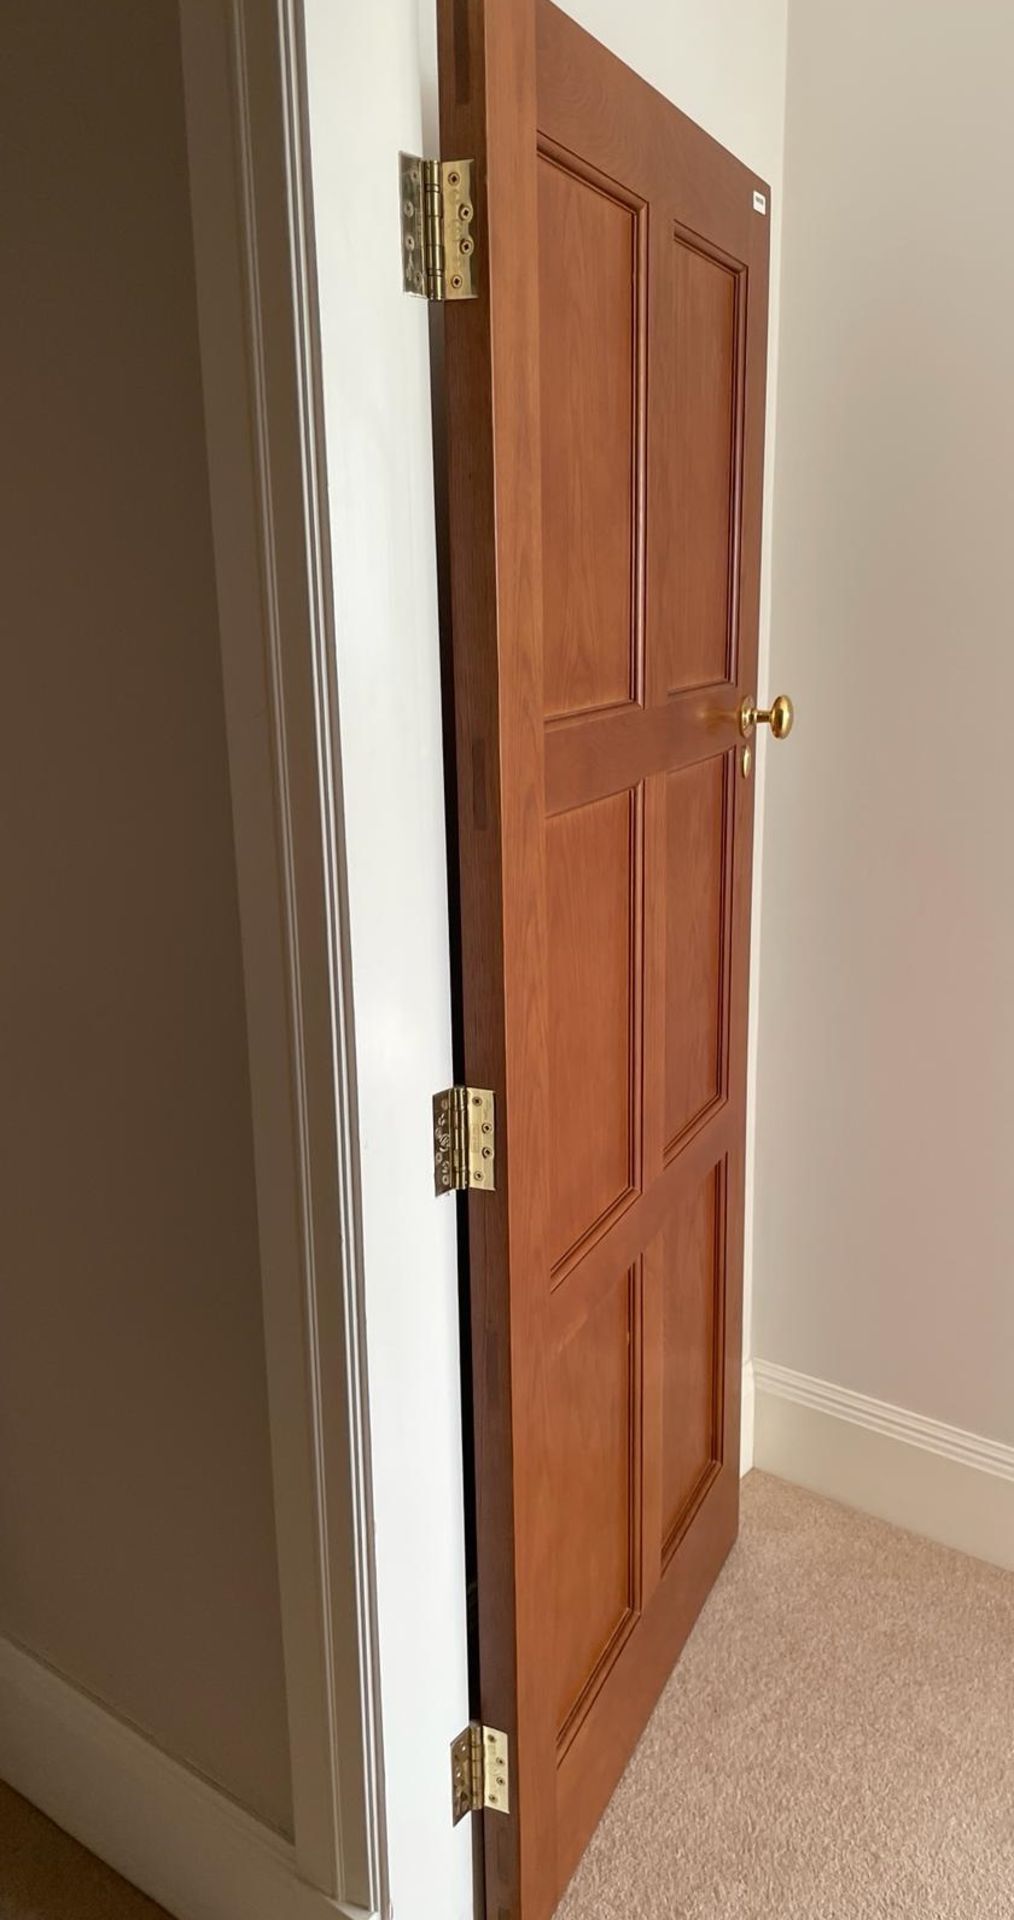 1 x Solid Wood Lockable Internal Door - Ref: PAN258 / BED3 - CL896 - NO VAT ON THE HAMMER - - Image 5 of 12